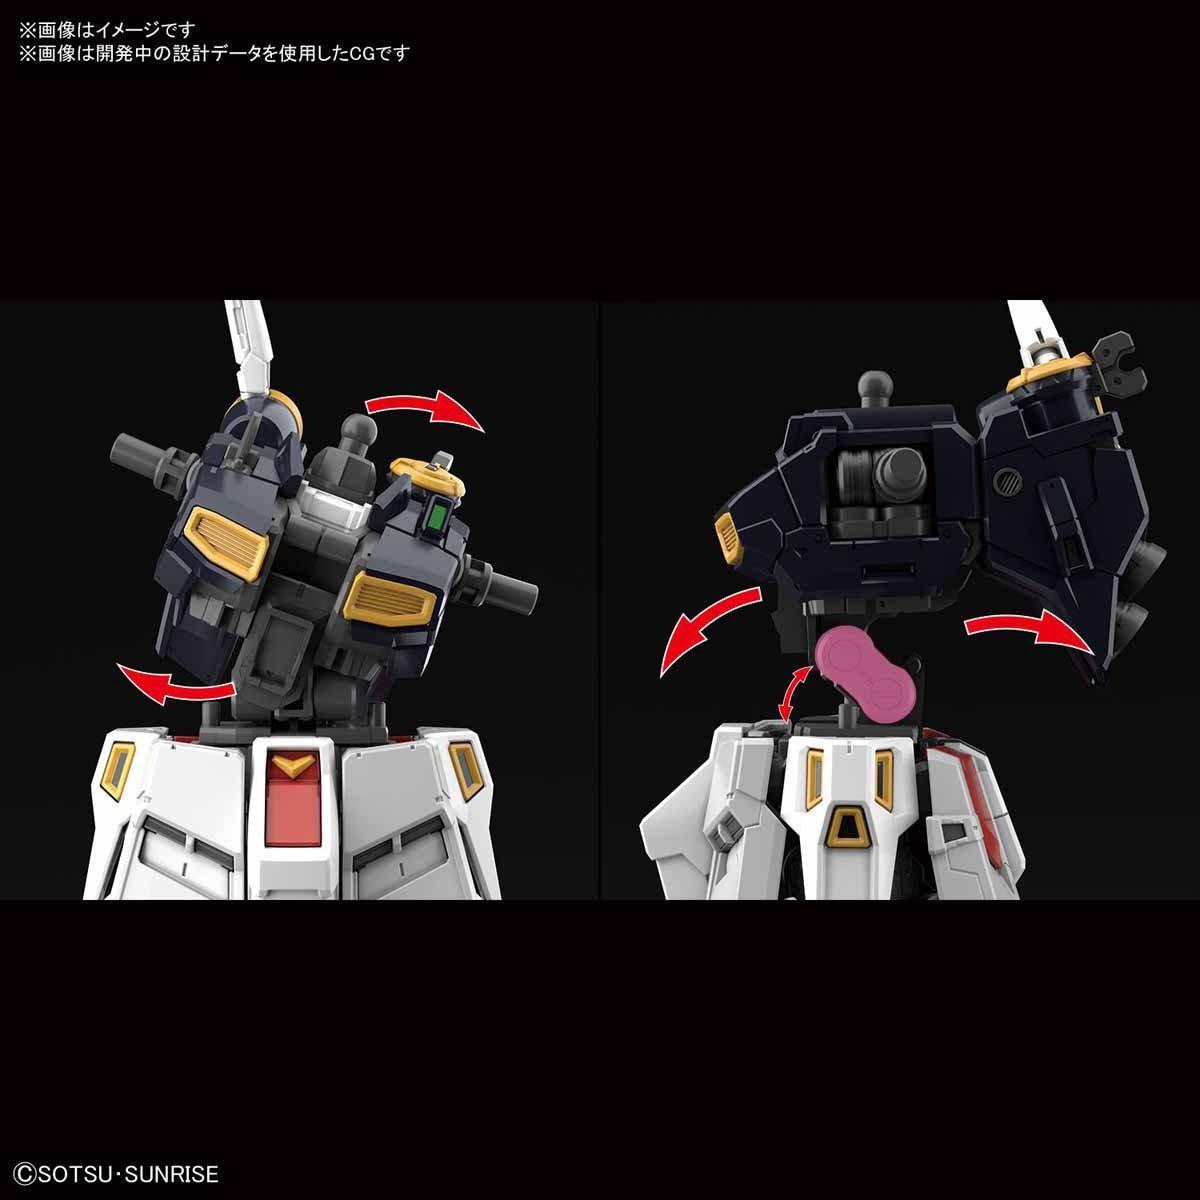 Gunpla RG 1/144 V RX-93 V Gundam-Bandai-Ace Cards &amp; Collectibles